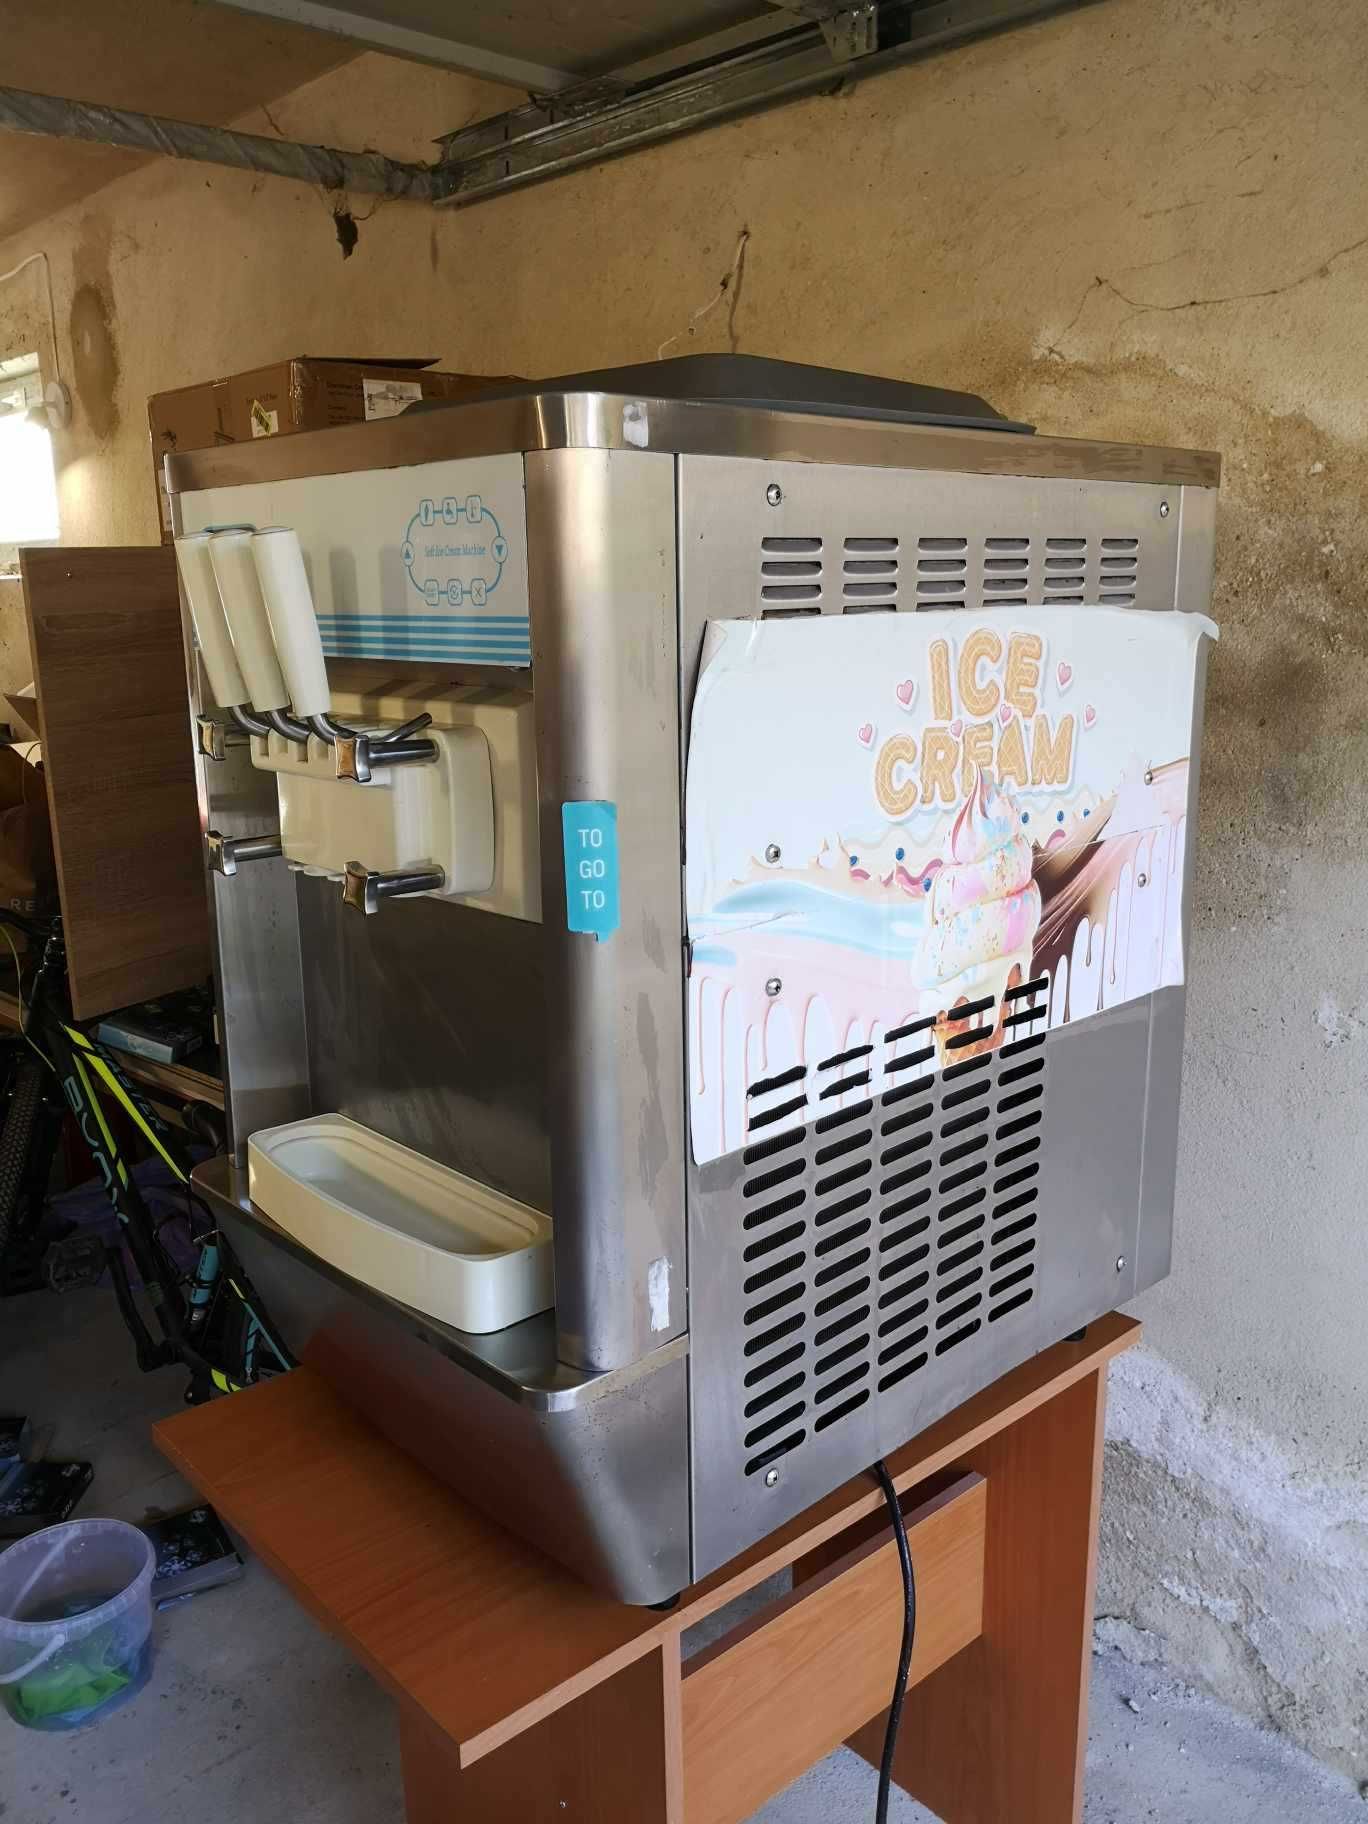 Професионална машина за италиански сладолед на монофазен ток